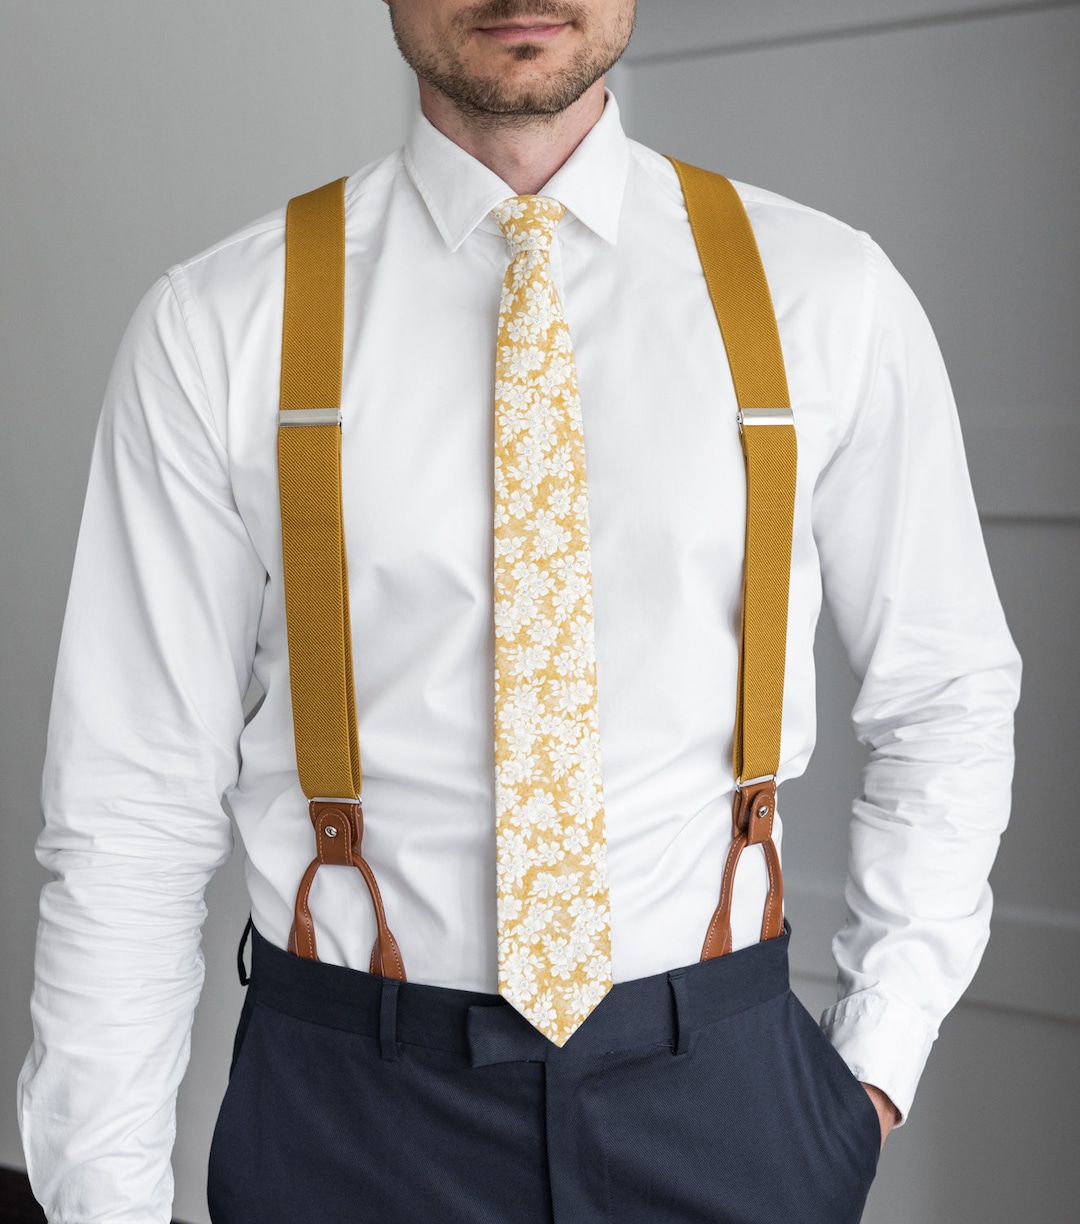 Beige Suspenders for Men, Button Suspenders, Wedding Suspenders for Groom  Groomsmen, Elastic Suspenders, Clip Suspenders -  Israel